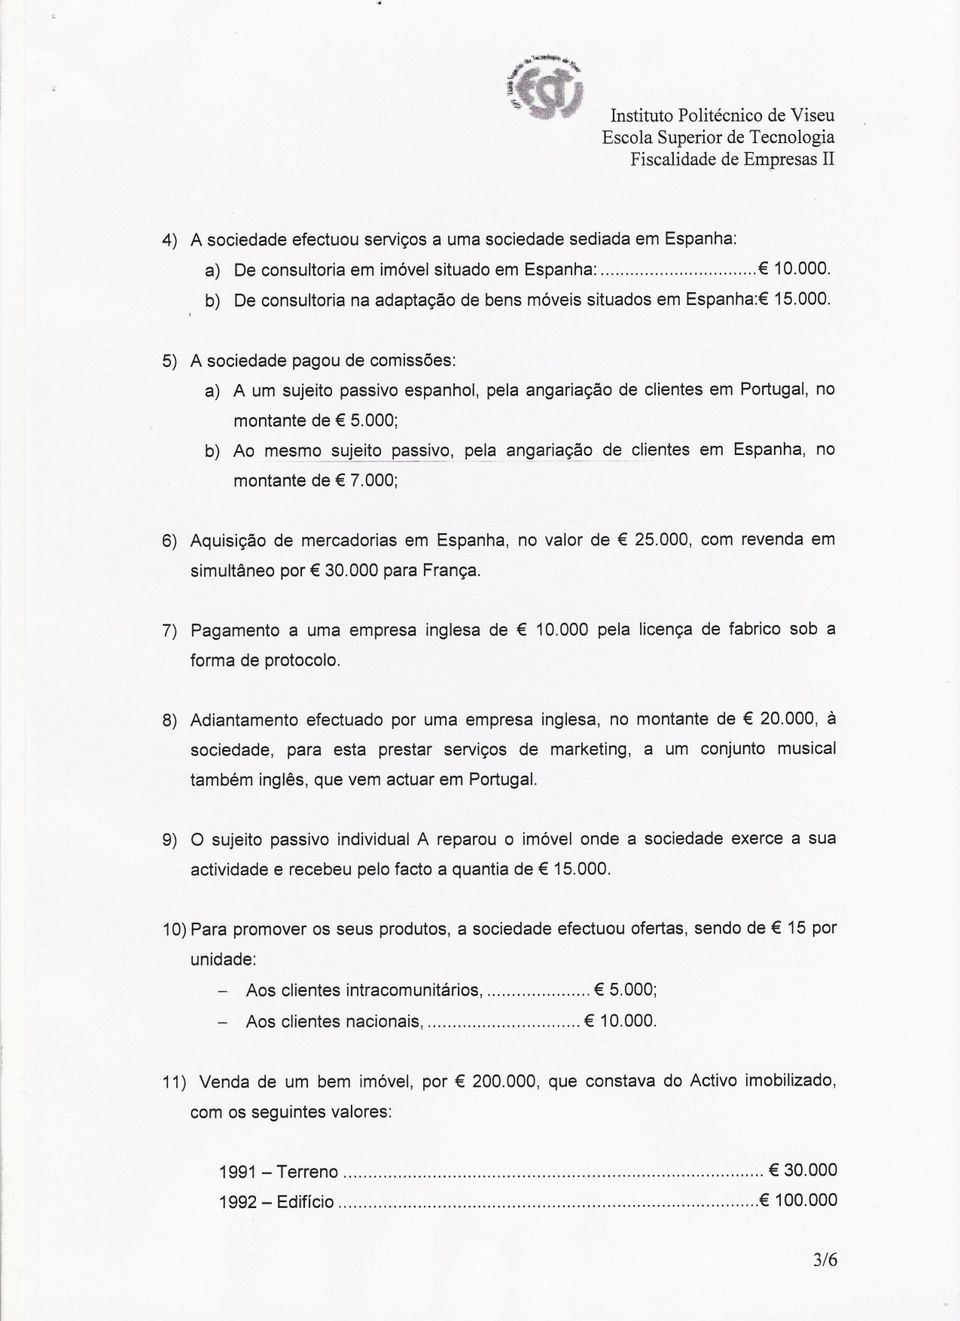 5) A sociedade pagou de comissões: a) A um sujeito passivo espanhol, pela angariação de clientes em Portugal, no montante de 5.